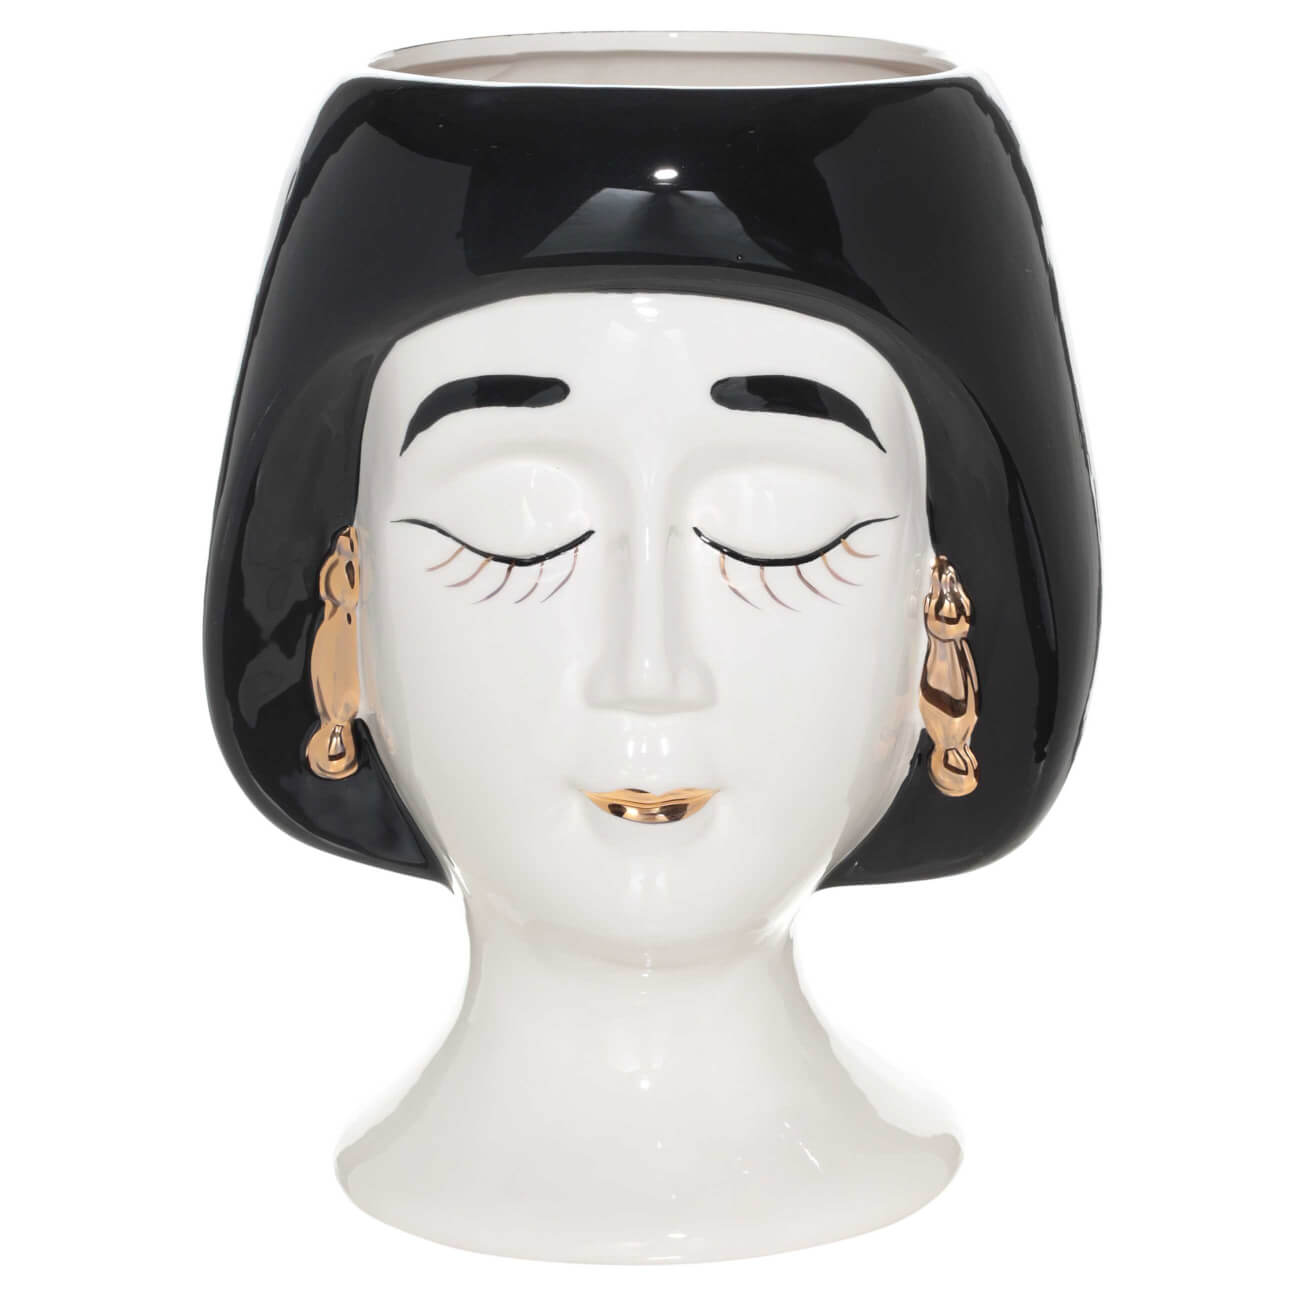 Ваза для цветов, 30 см, декоративная, керамика, бело-черная, Дама в сережках, Girls ваза для ов 29 см декоративная керамика черная графичное лицо face